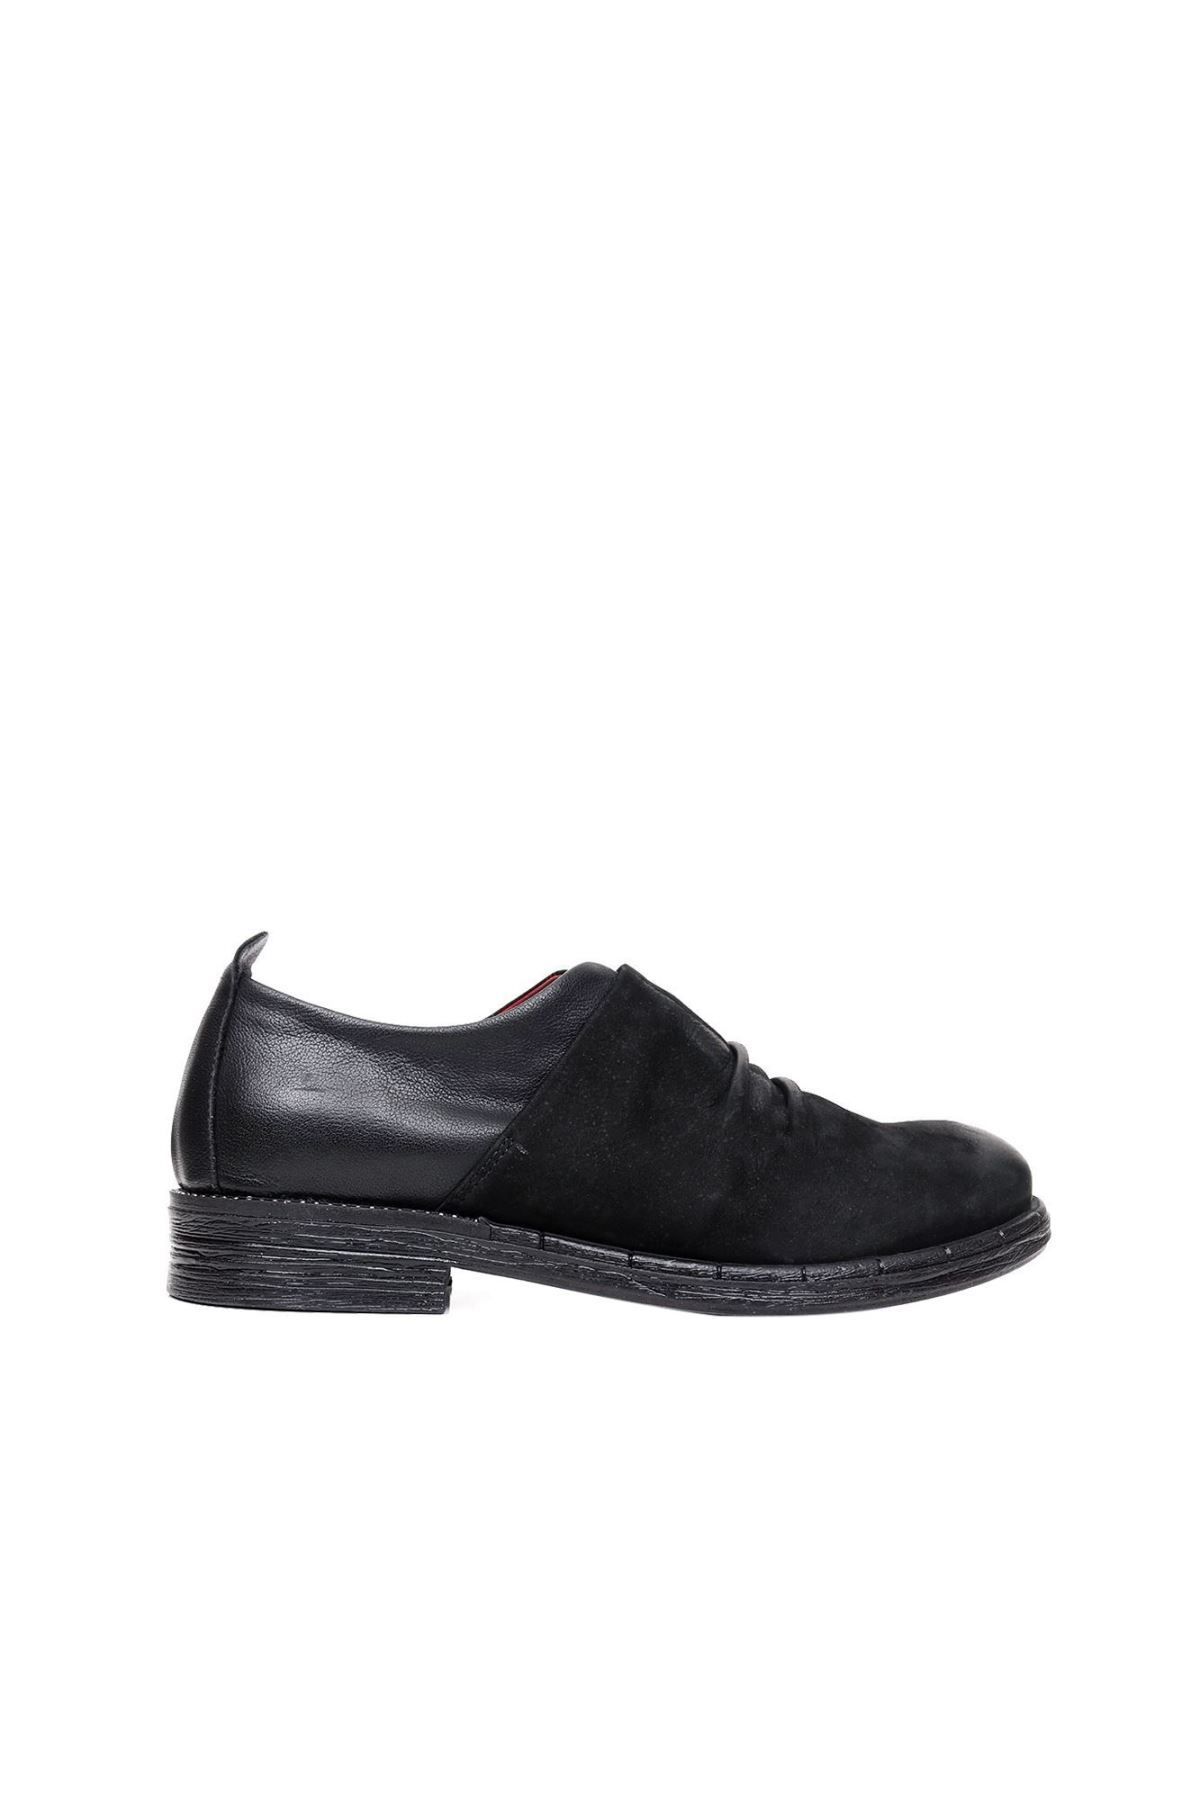 BUENO Shoes Siyah Deri Kadın Az Topuklu Ayakkabı